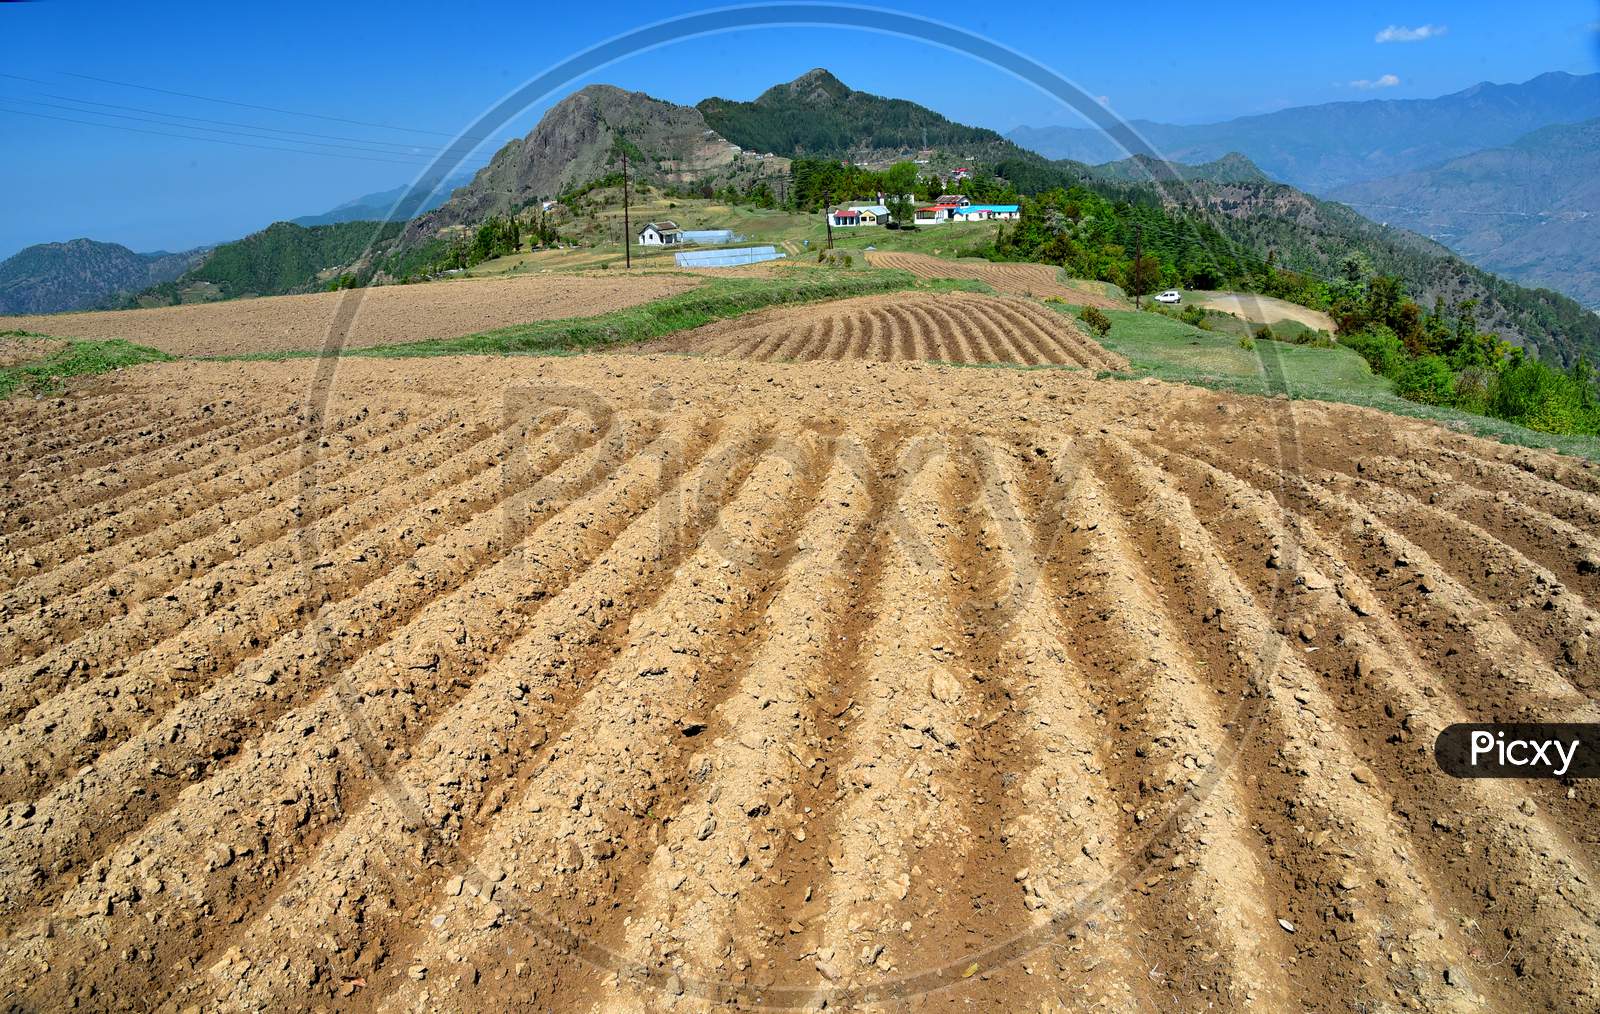 Potato Cultivation in Terrain Lands At Dhanaulti, Uttarakhand